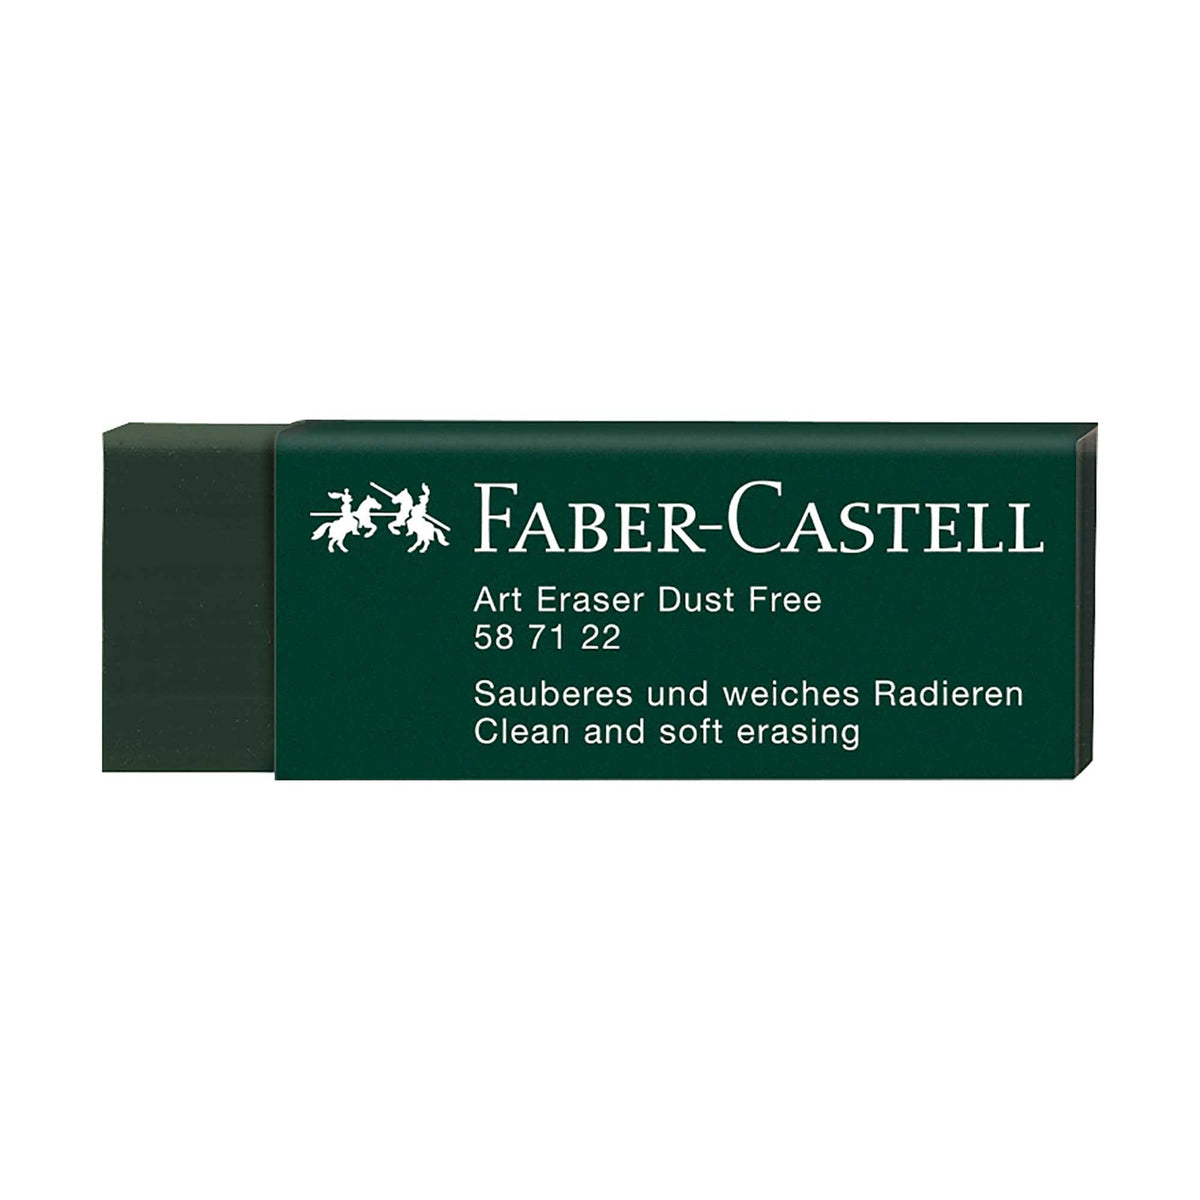 Faber-Castell Art Eraser - DUST-FREE - Green